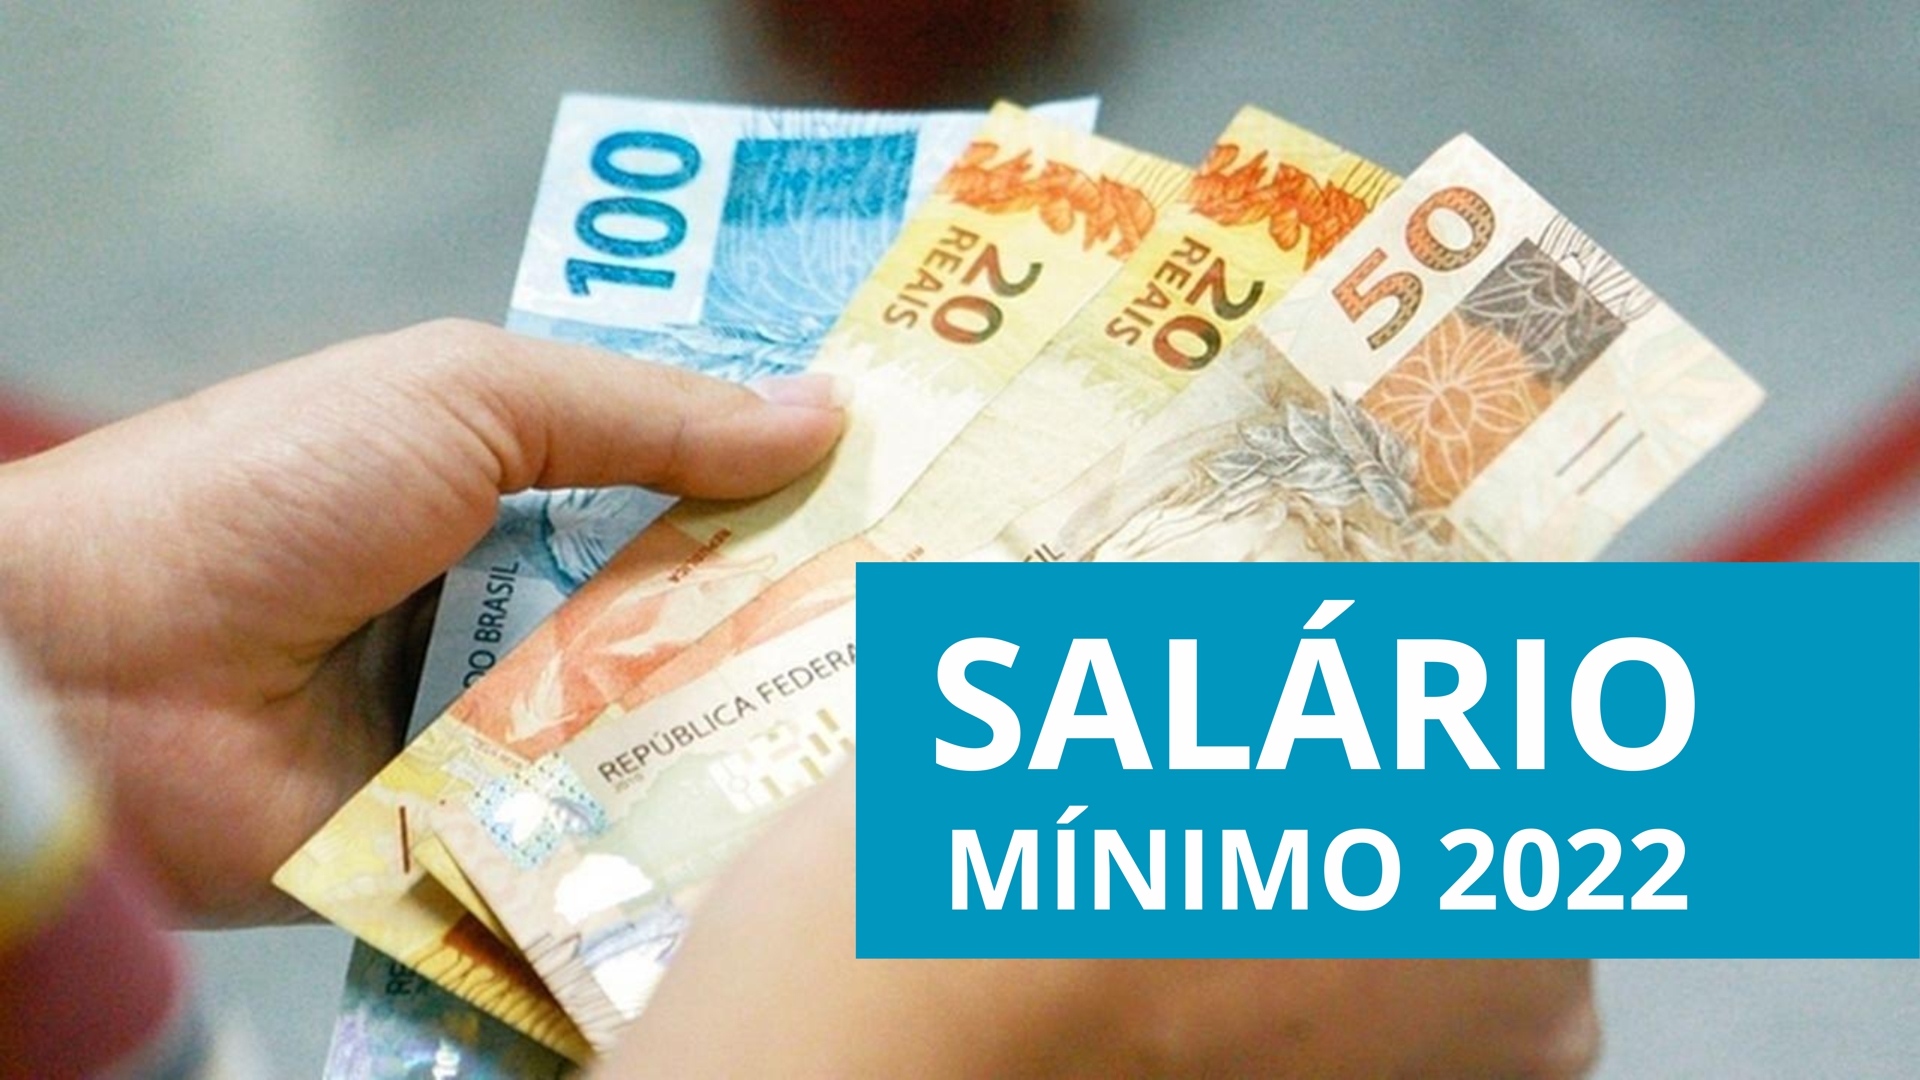 Salário mínimo 2022 novo valor já está em vigor; confira DKT Contabilidade